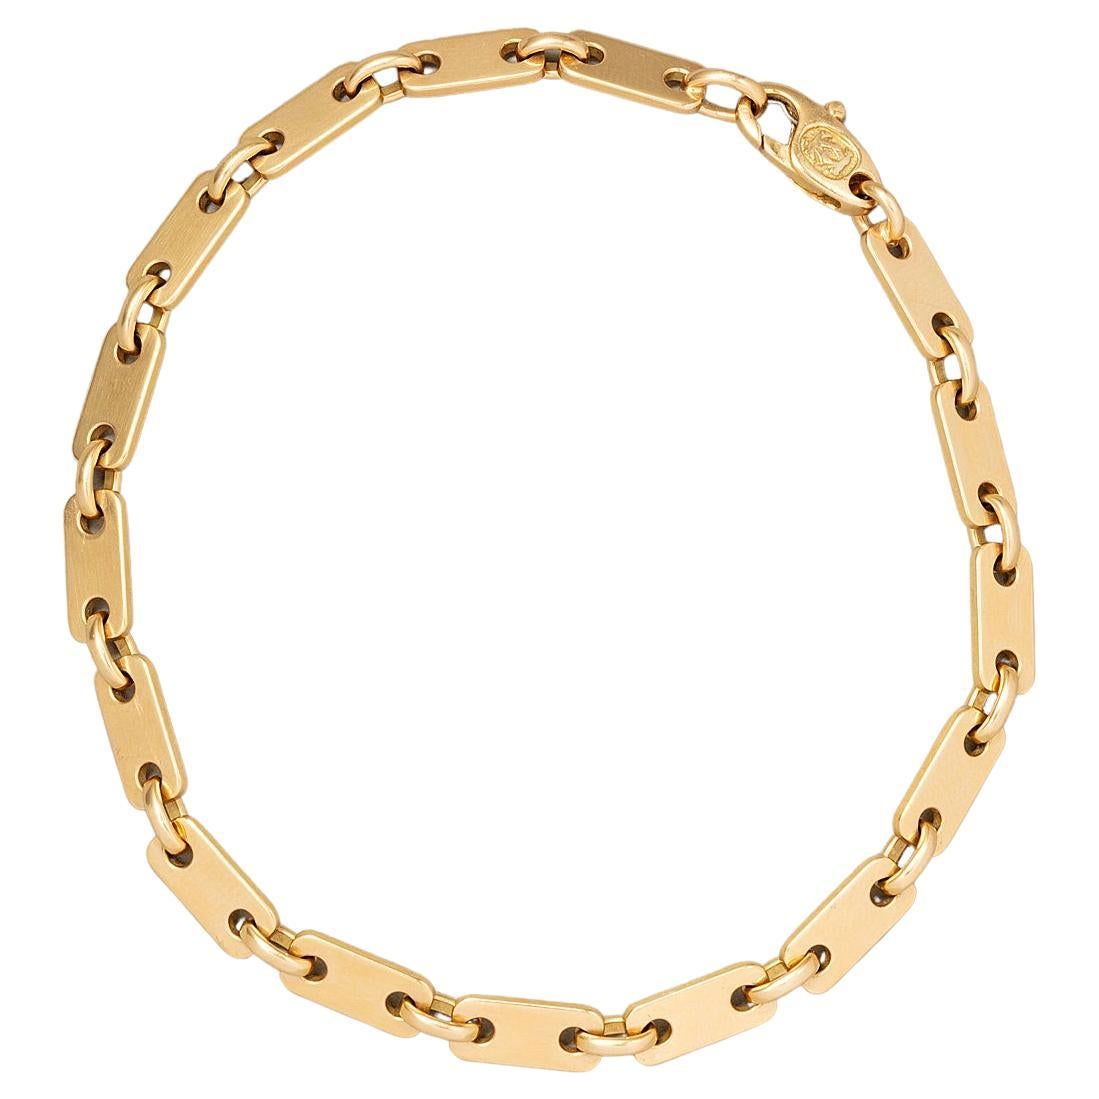 An 18 Carat Gold Tab Link Cartier Bracelet